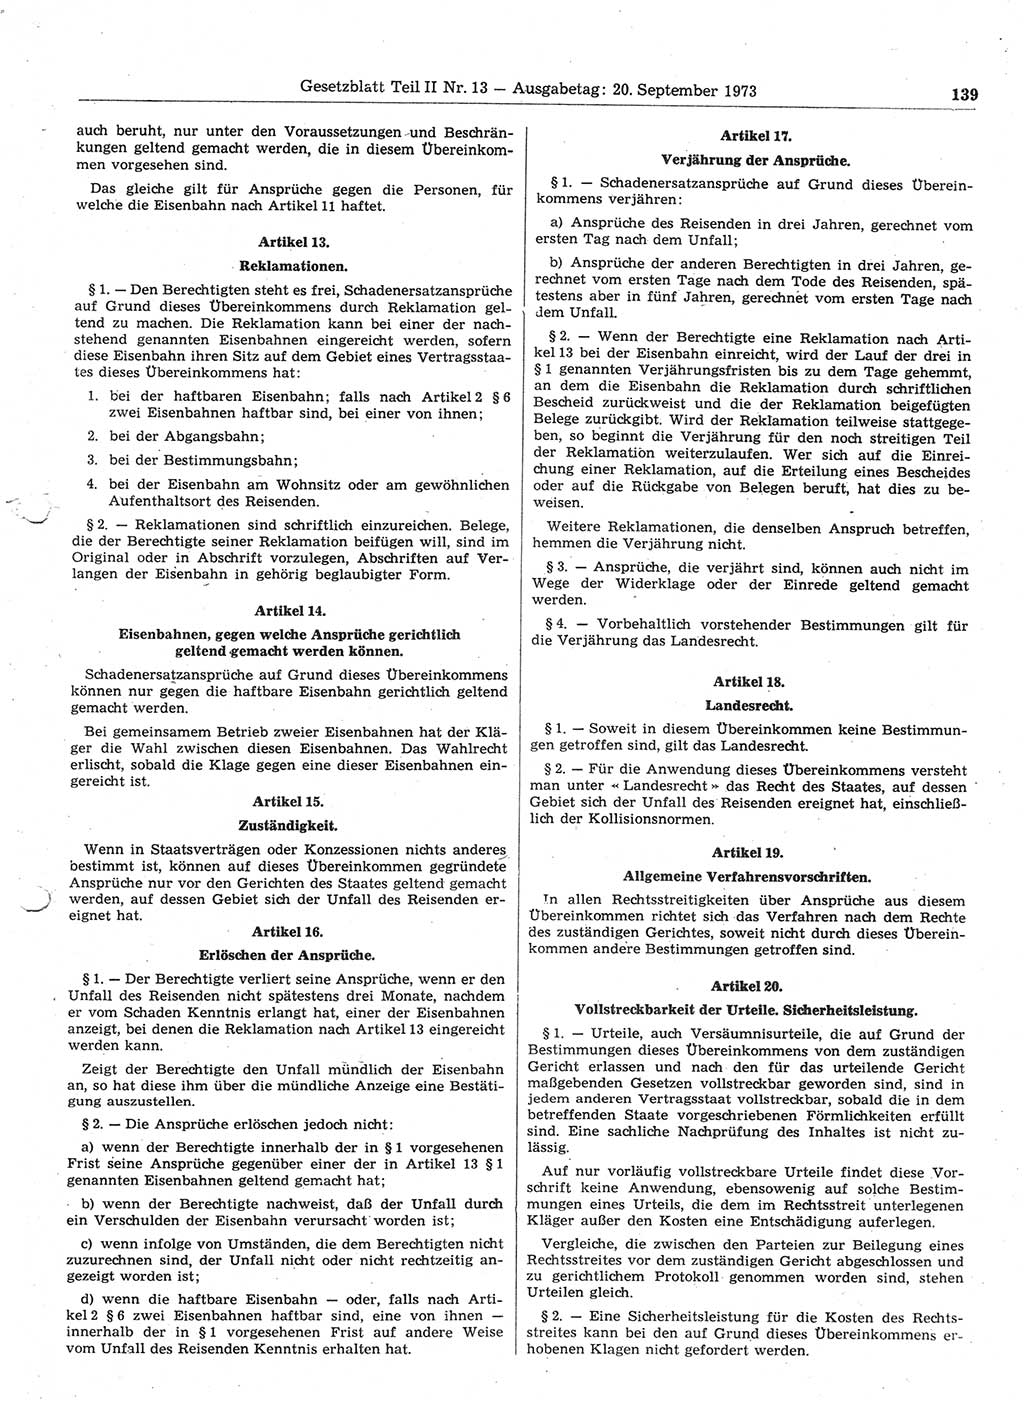 Gesetzblatt (GBl.) der Deutschen Demokratischen Republik (DDR) Teil ⅠⅠ 1973, Seite 139 (GBl. DDR ⅠⅠ 1973, S. 139)